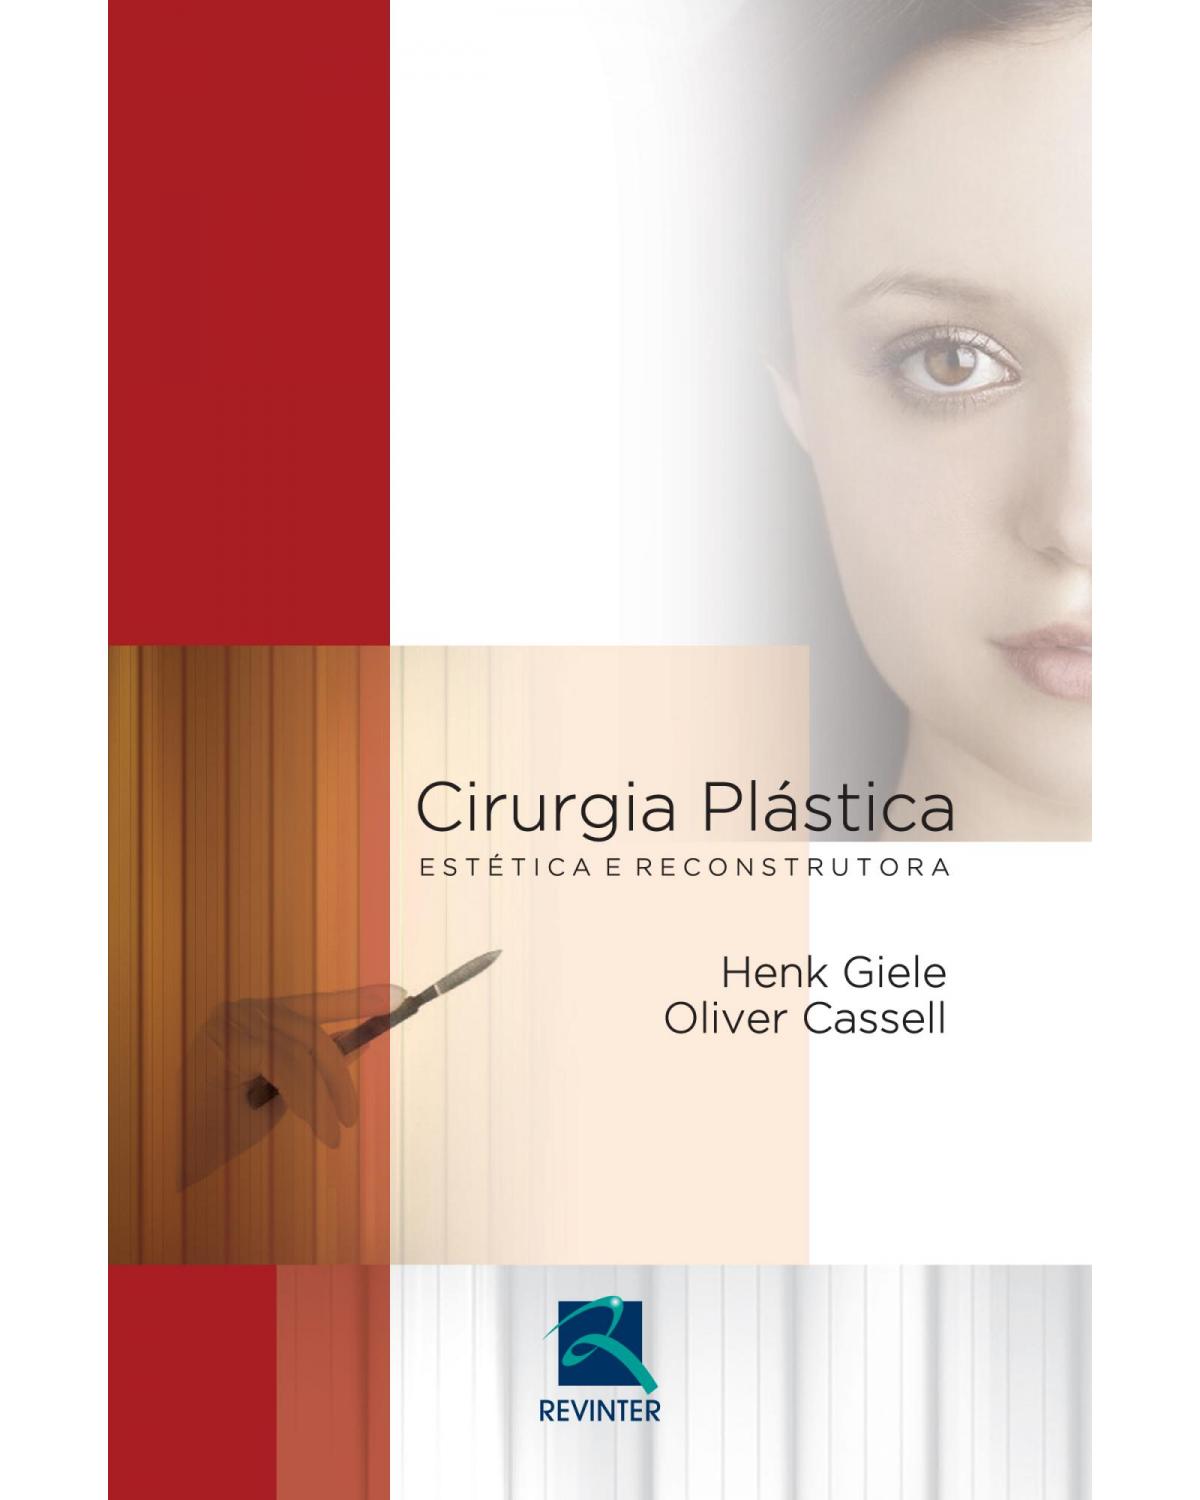 Cirurgia plástica - estética e reconstrutora - 1ª Edição | 2015